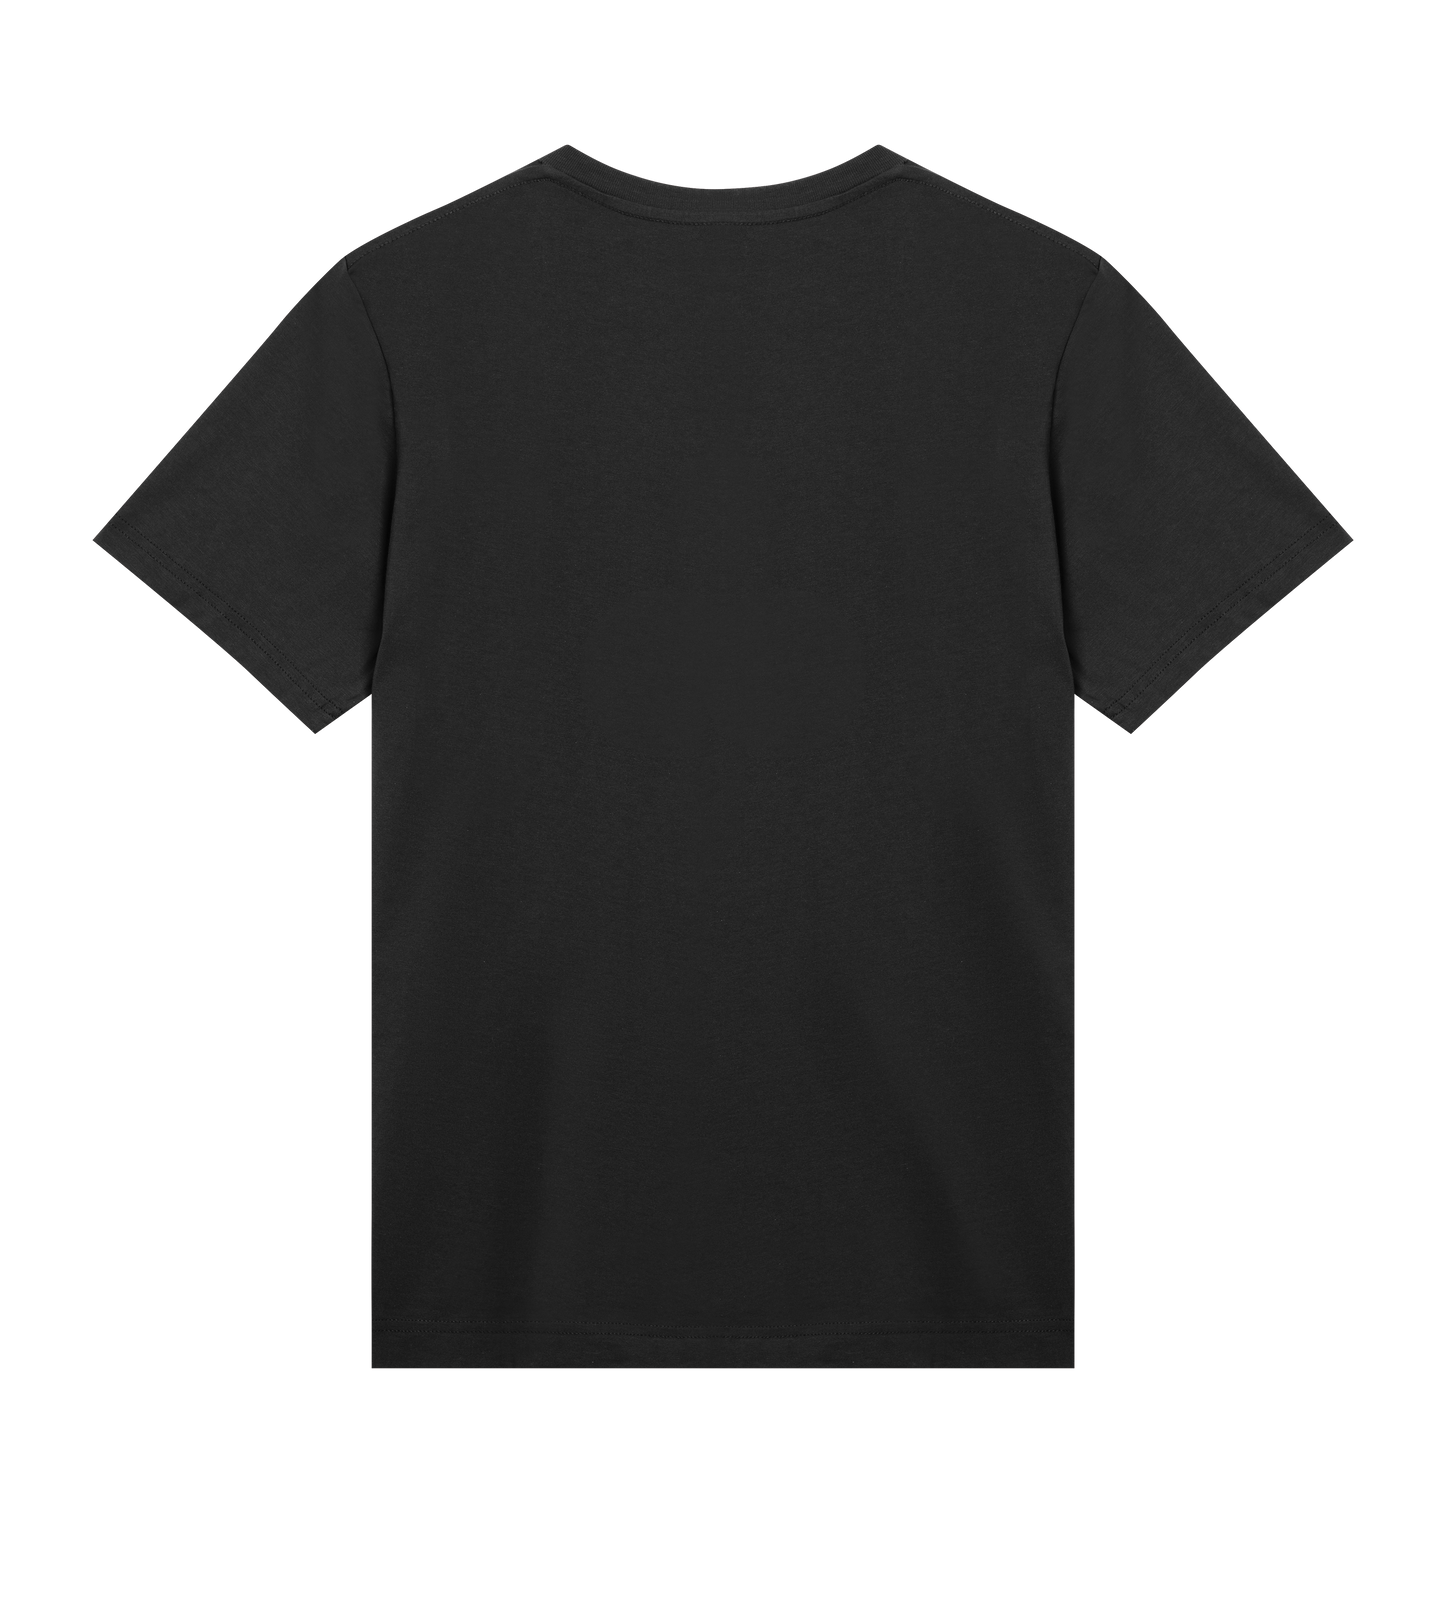 Xion - Derailed Mens Regular T-shirt